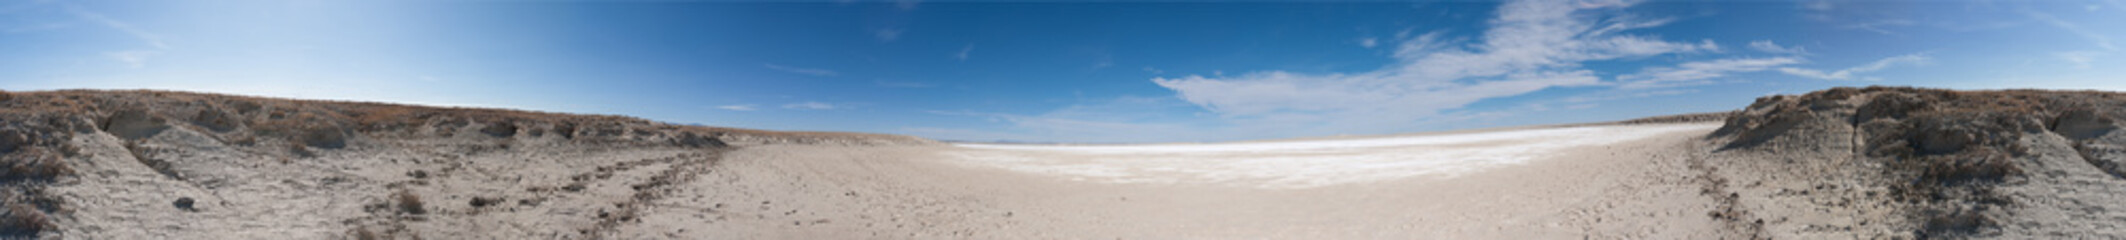 Estancia New Mexico Salt Lake Playa